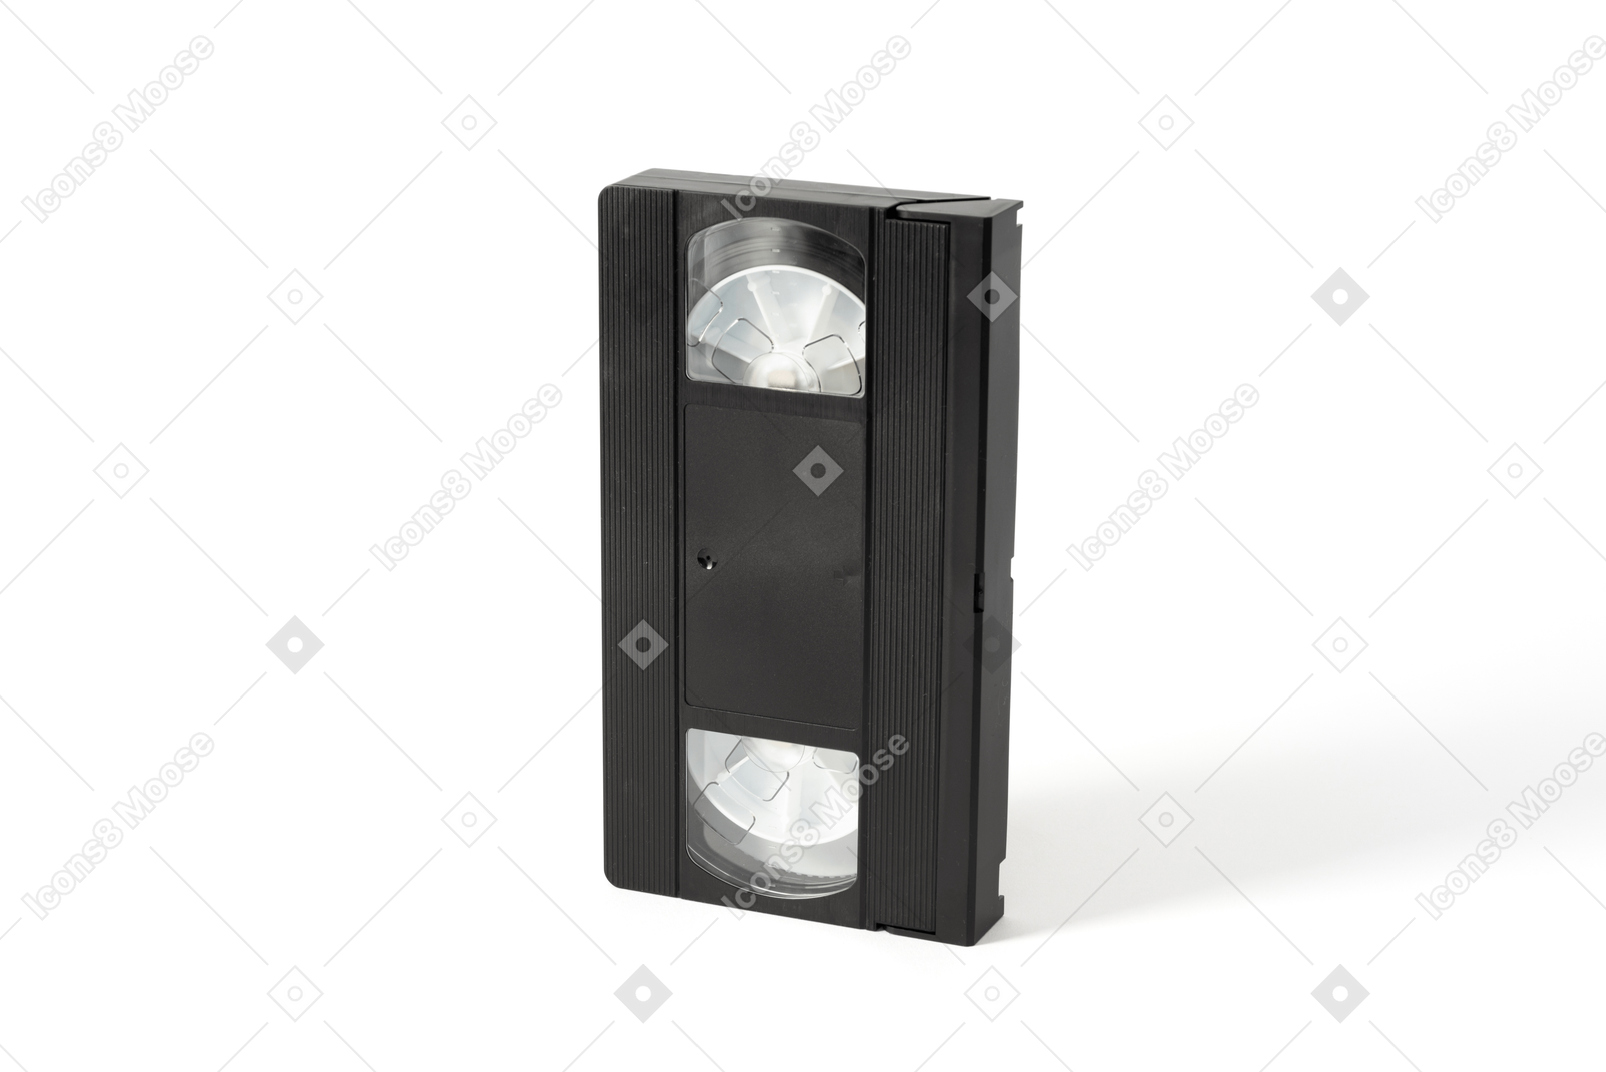 Black video cassette